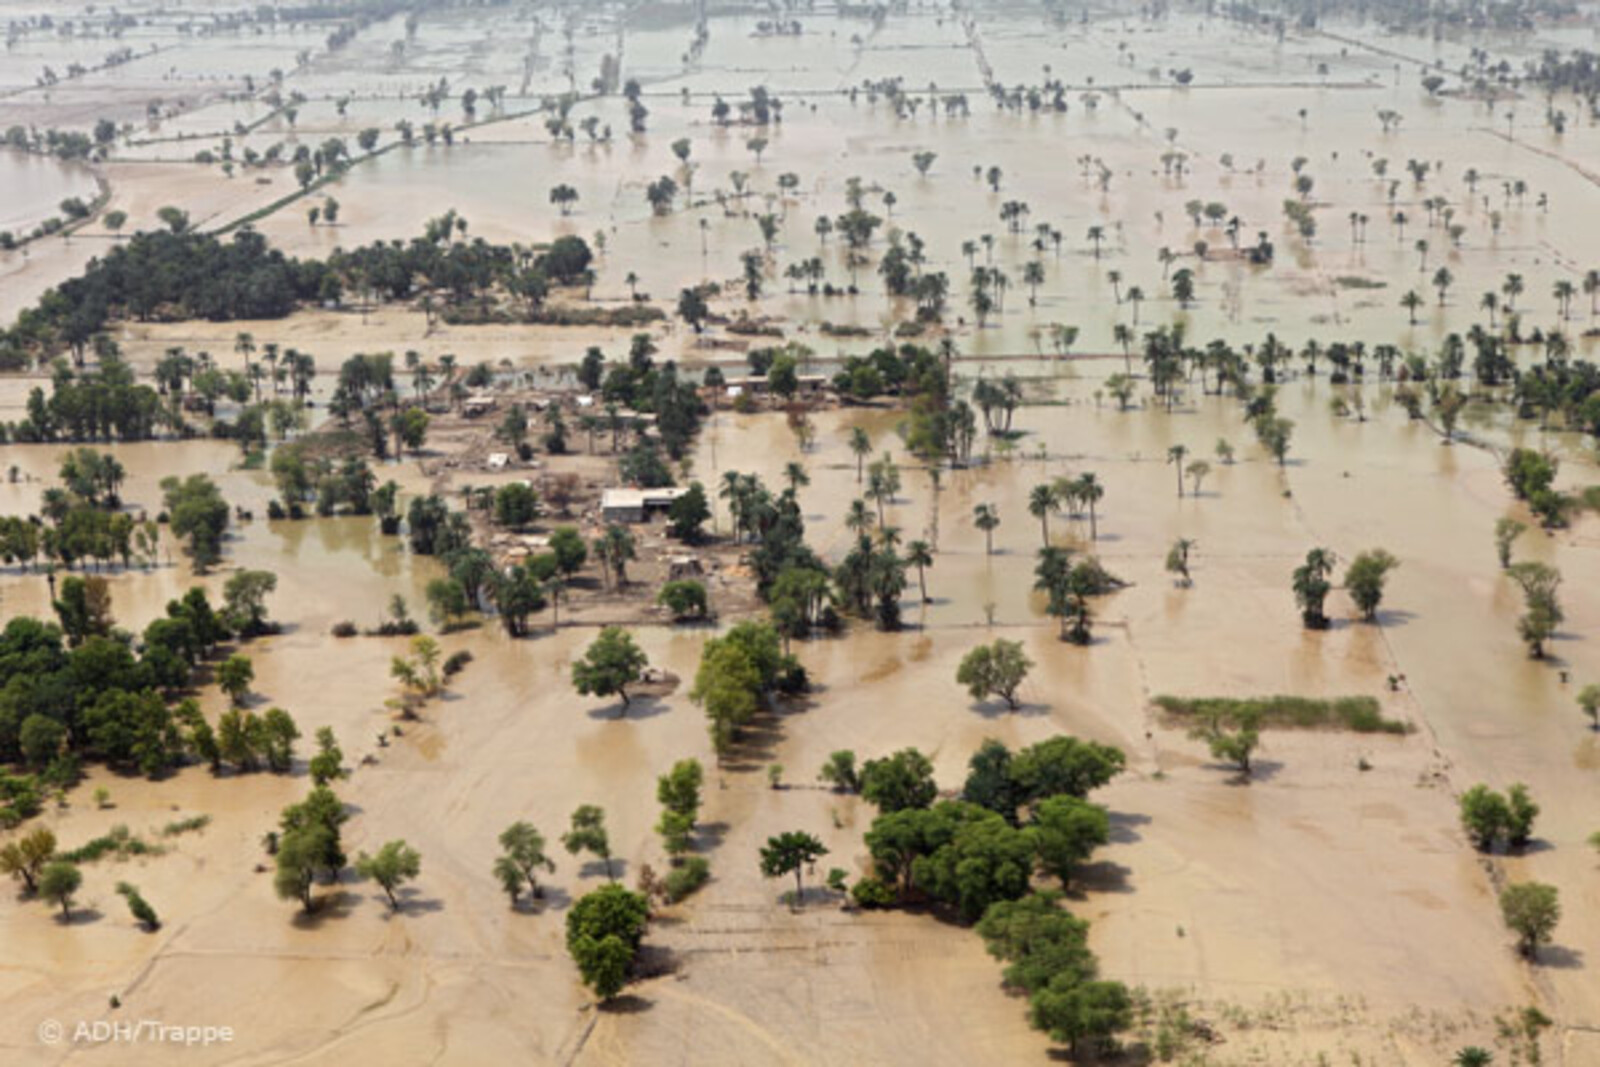 Flut Pakistan: Blick auf überflutete Gebiete im Süden am 31.08.2010